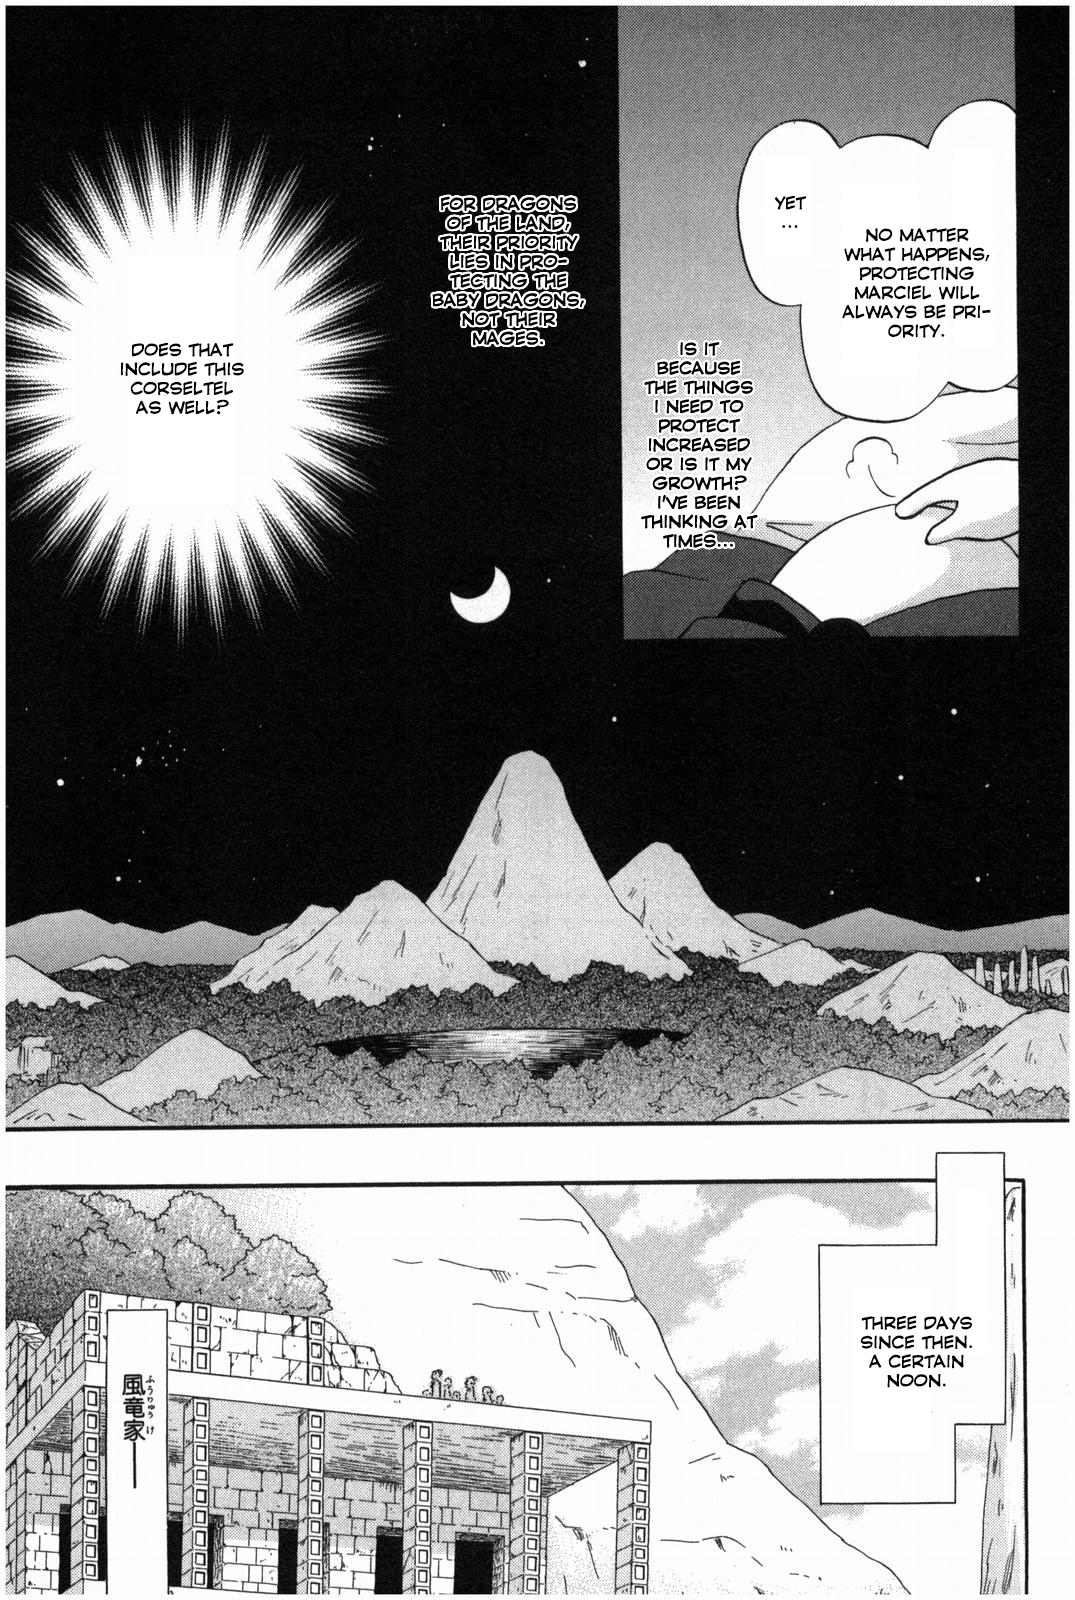 Corseltel no Ryuujitsushi Koryuu Monogatari Vol. 2 Ch. 13 Dragon Mage Siblings (First Part)